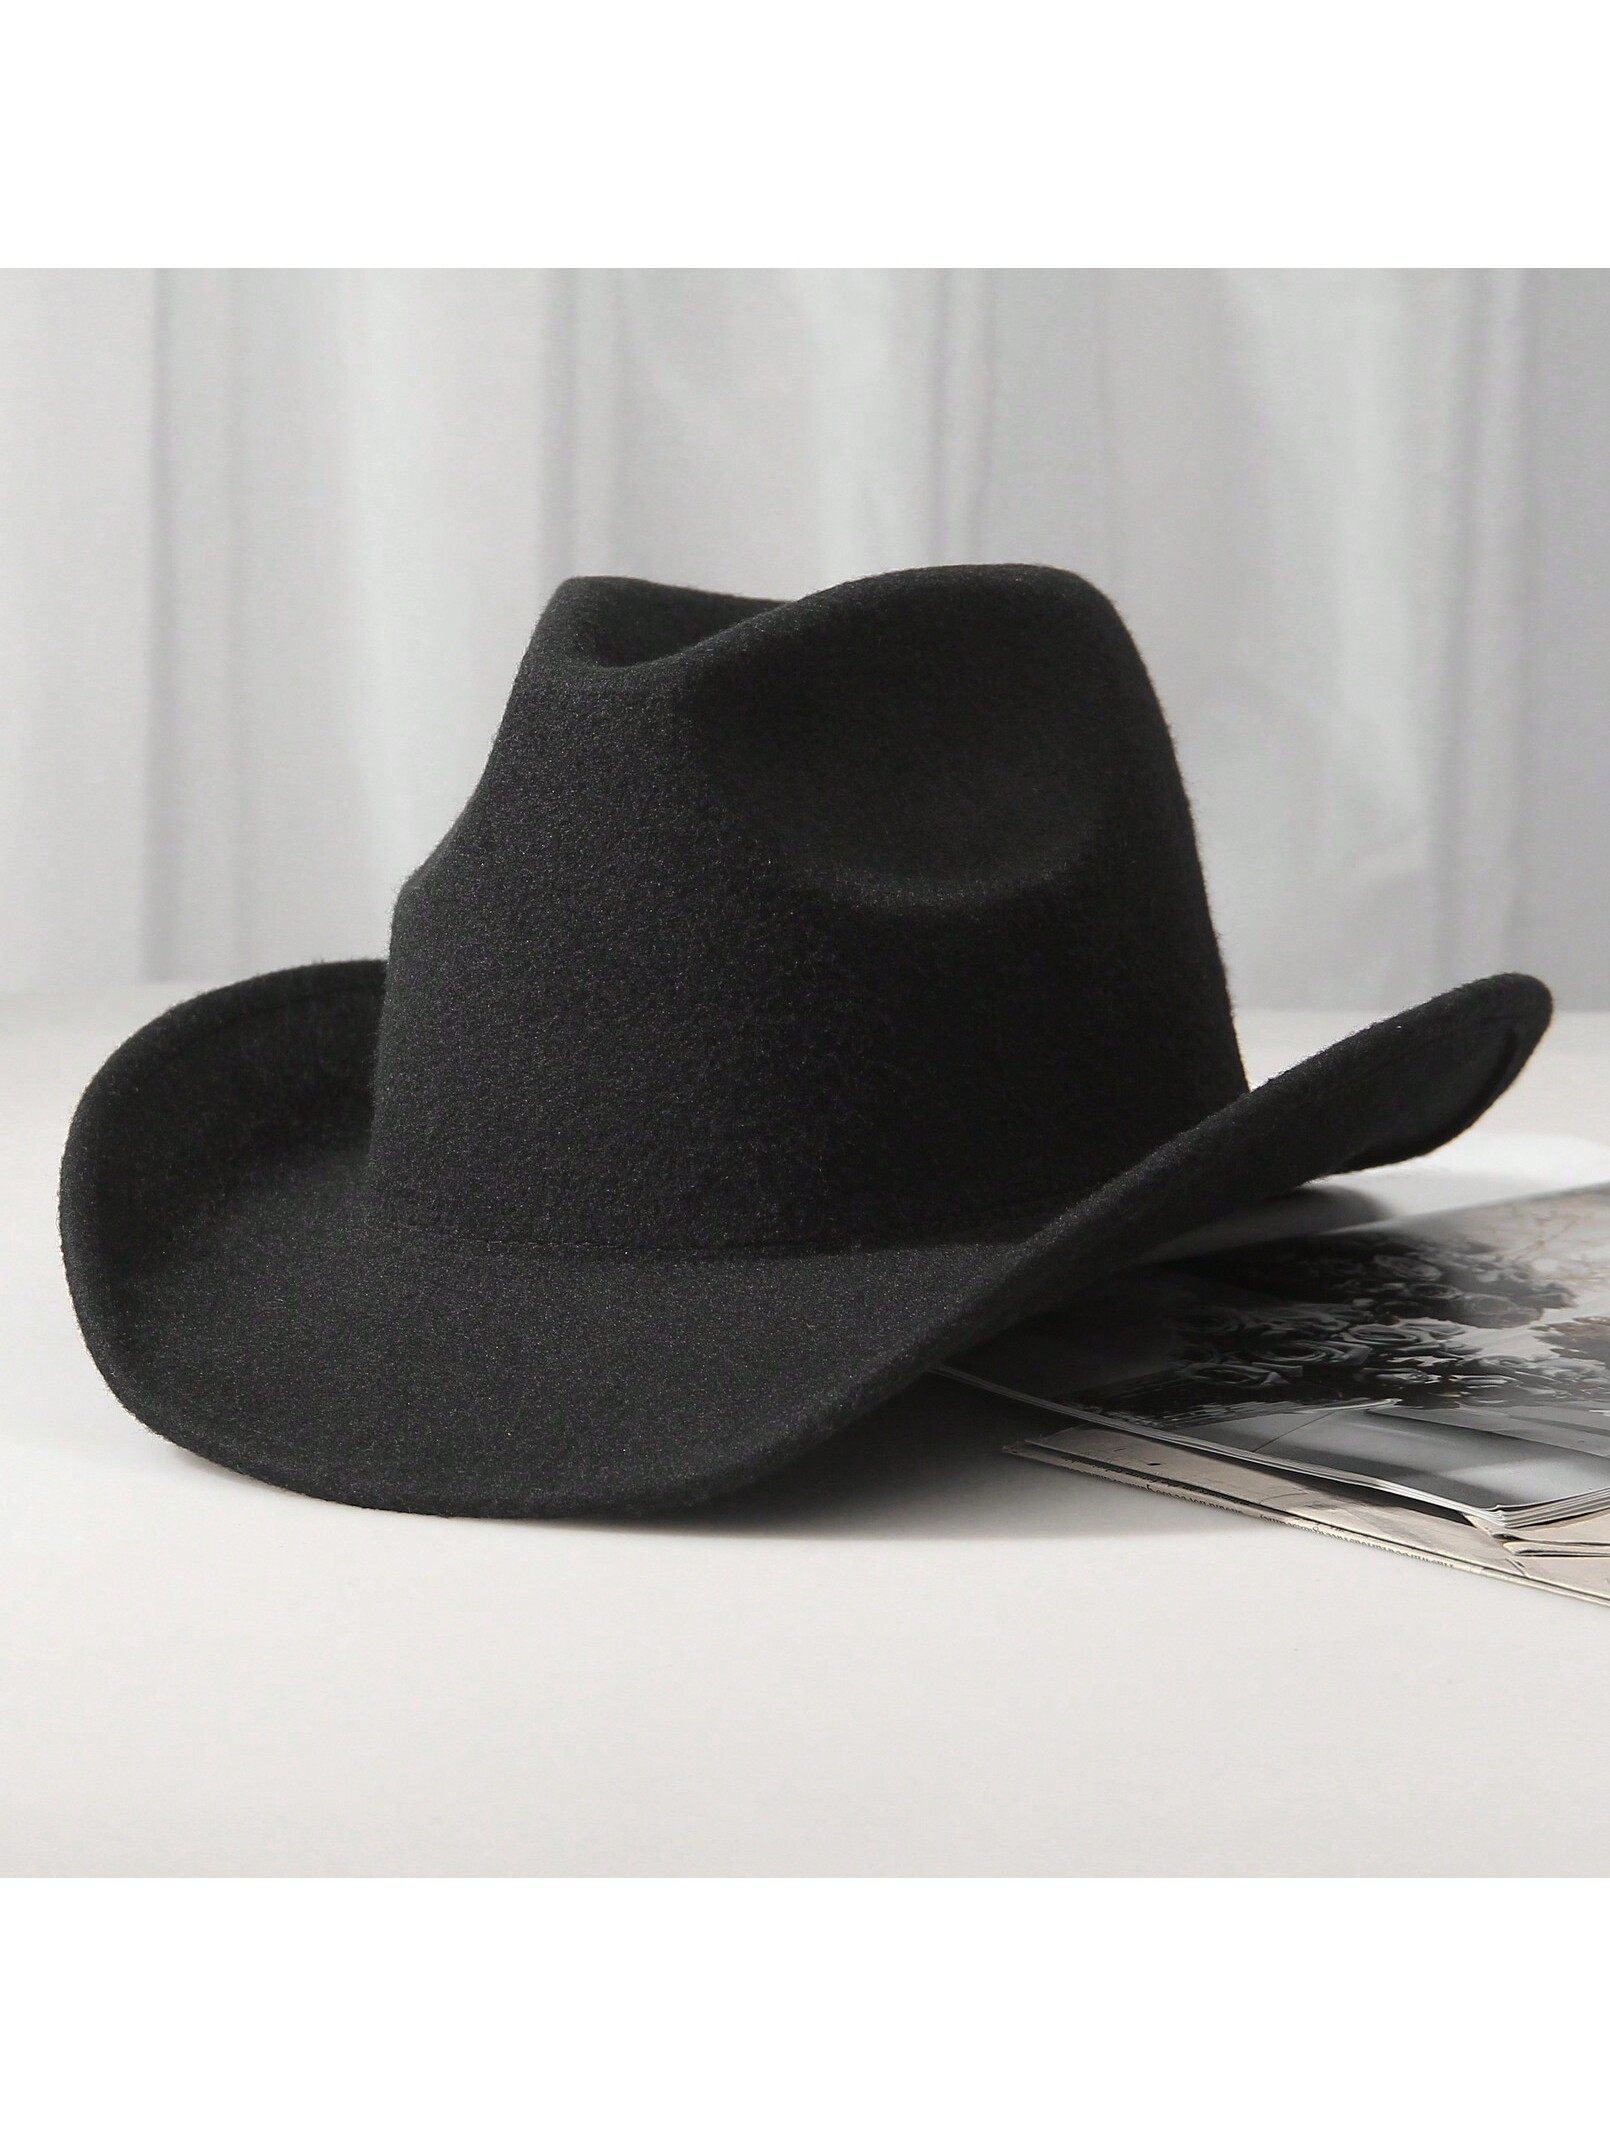 1шт унисекс шерстяная ковбойская шляпа-ковбойская шляпа в западном стиле черная ковбойская шляпа, черный ковбойская шляпа главный шериф взросл 3462368